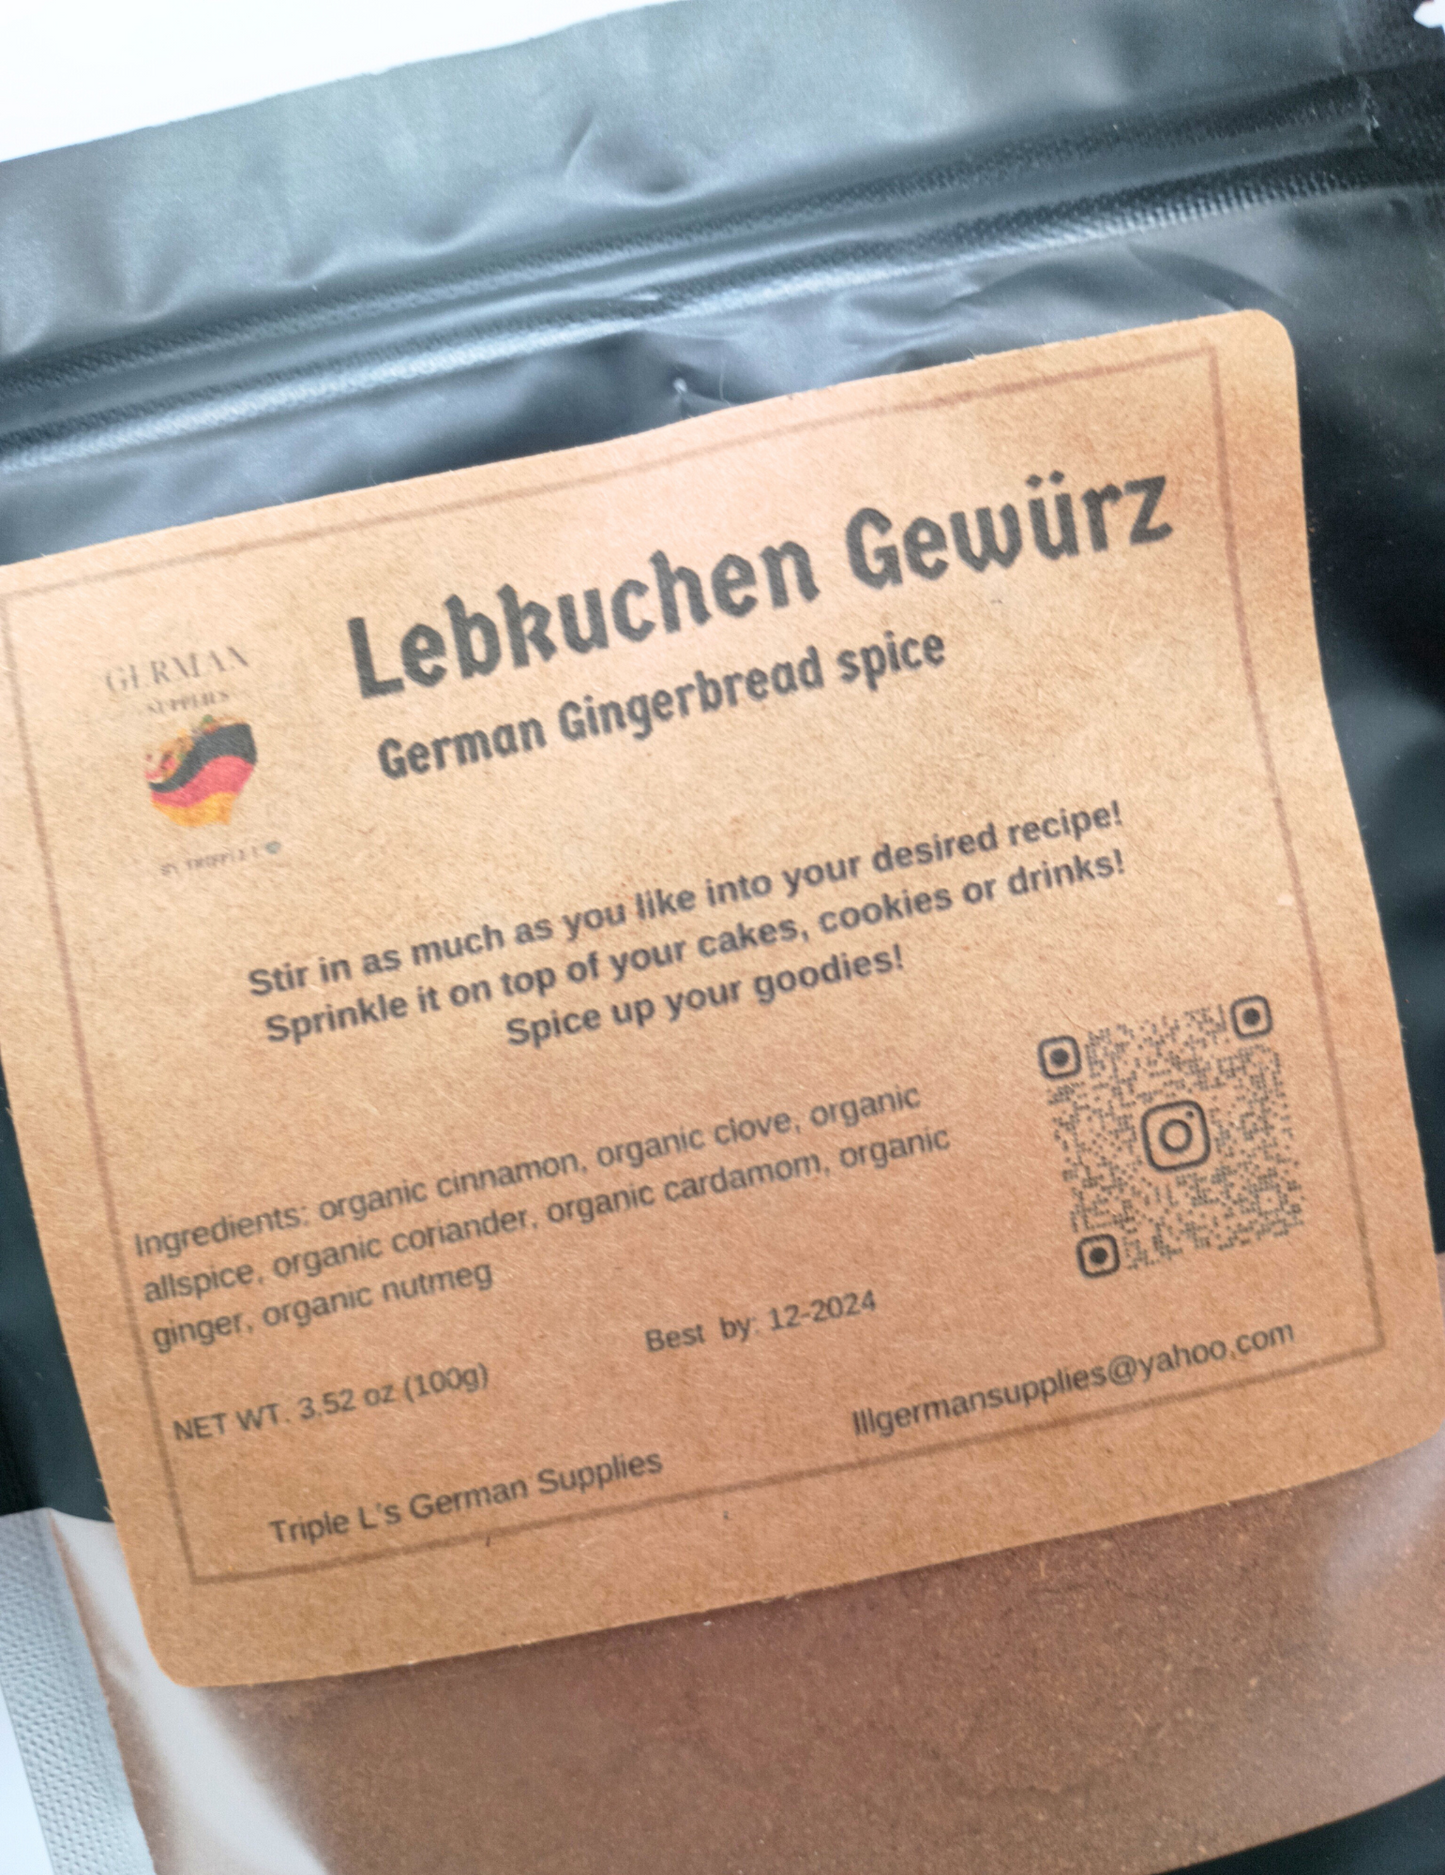 Big 100g Lebkuchen Gewürz, Lebkuchen Gewurz (flavorful German Gingerbread spice)